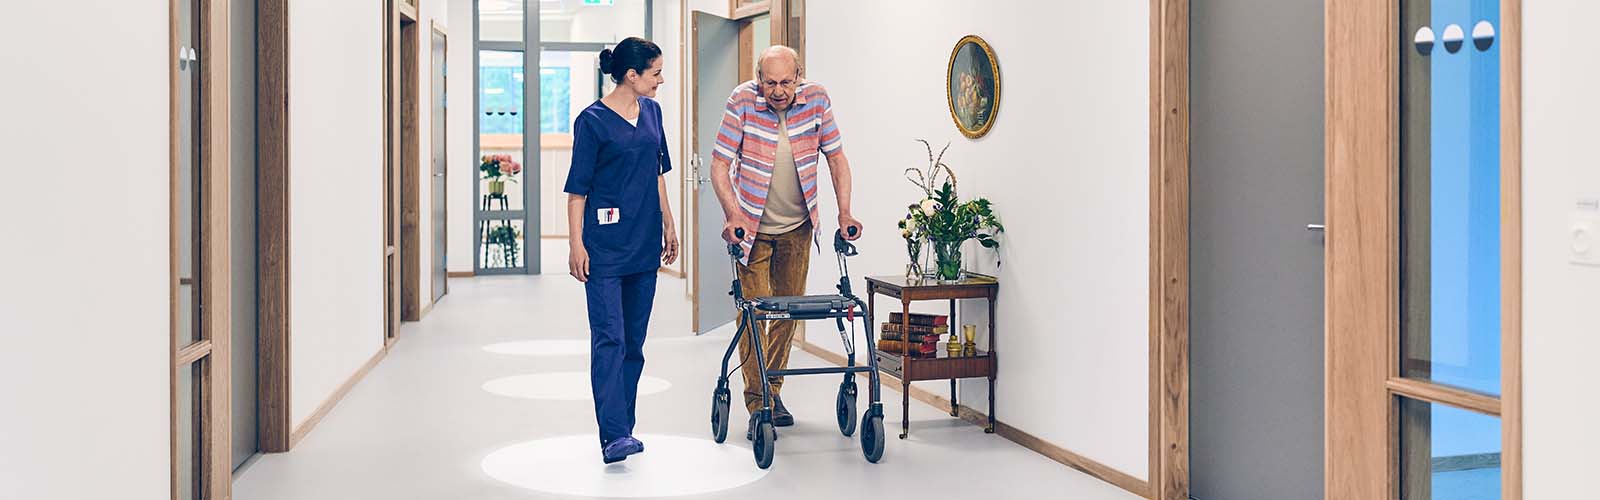 Profesionální pečovatelka a starší muž s pomůckou pro zlepšení mobility jdou po chodbě v domově pro seniory